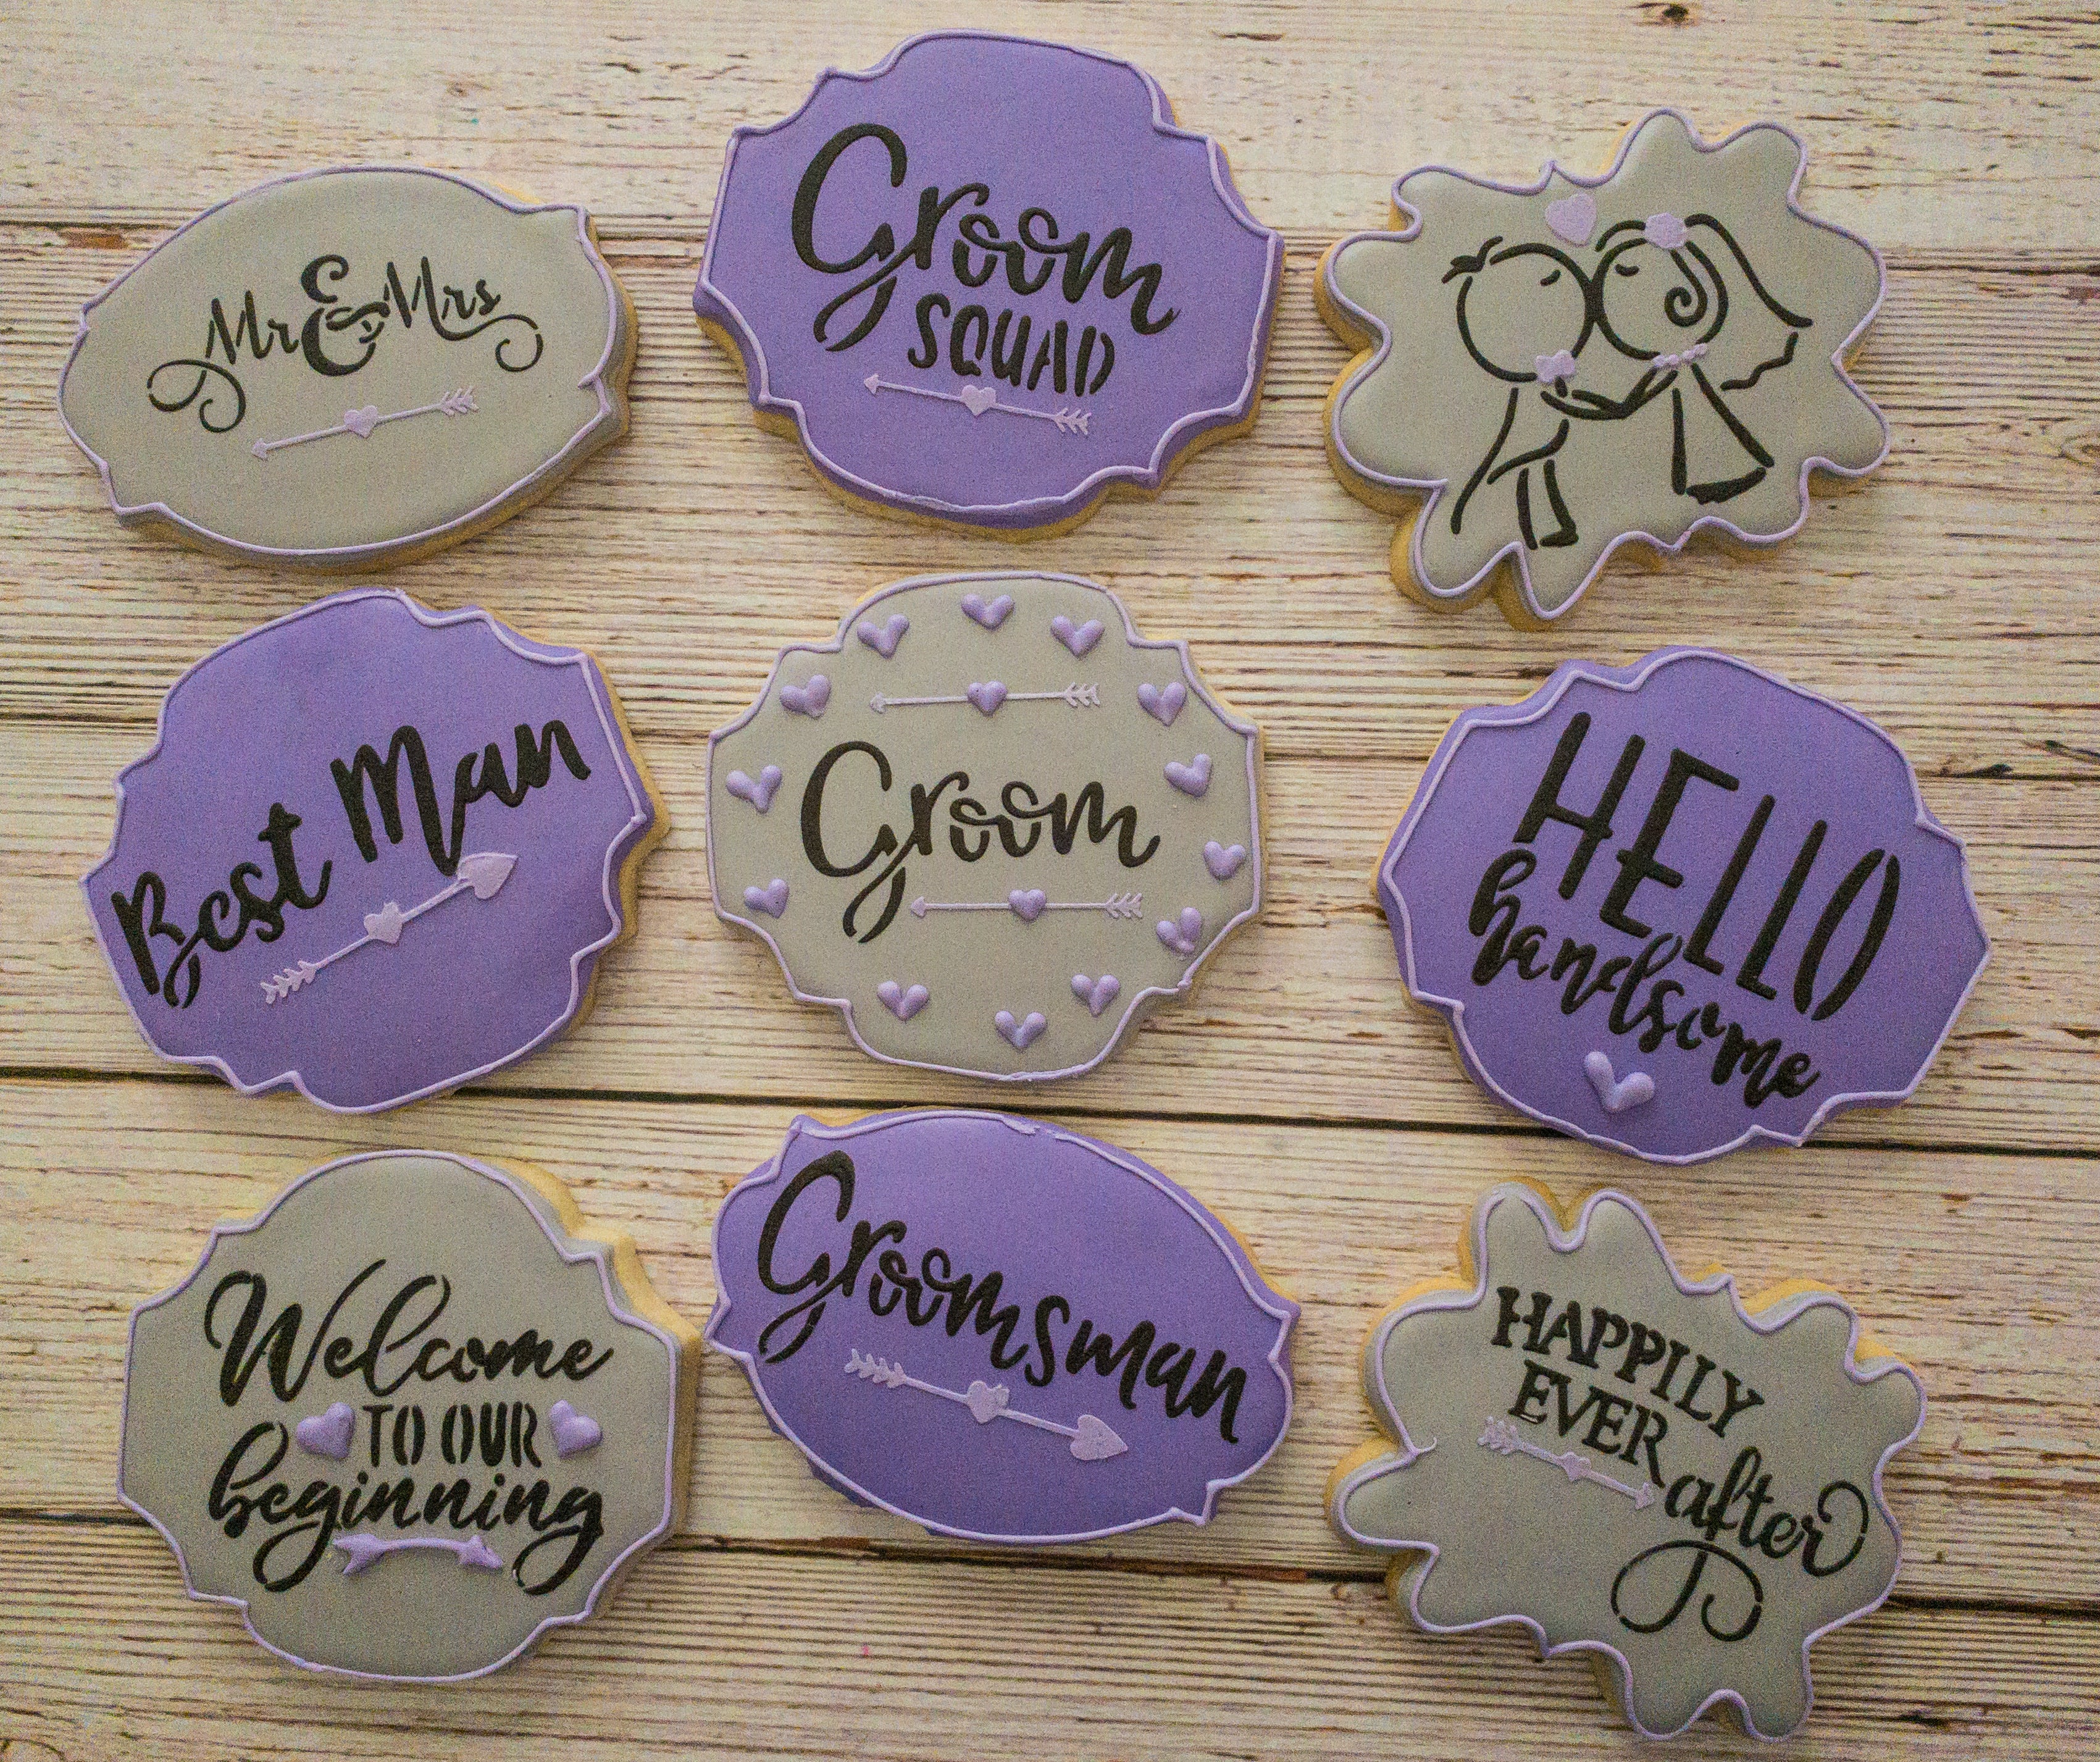 Wedding Party Names #2 - Groom Squad, Groom, Best Man, Groomsman Sentiments  Digital Designs